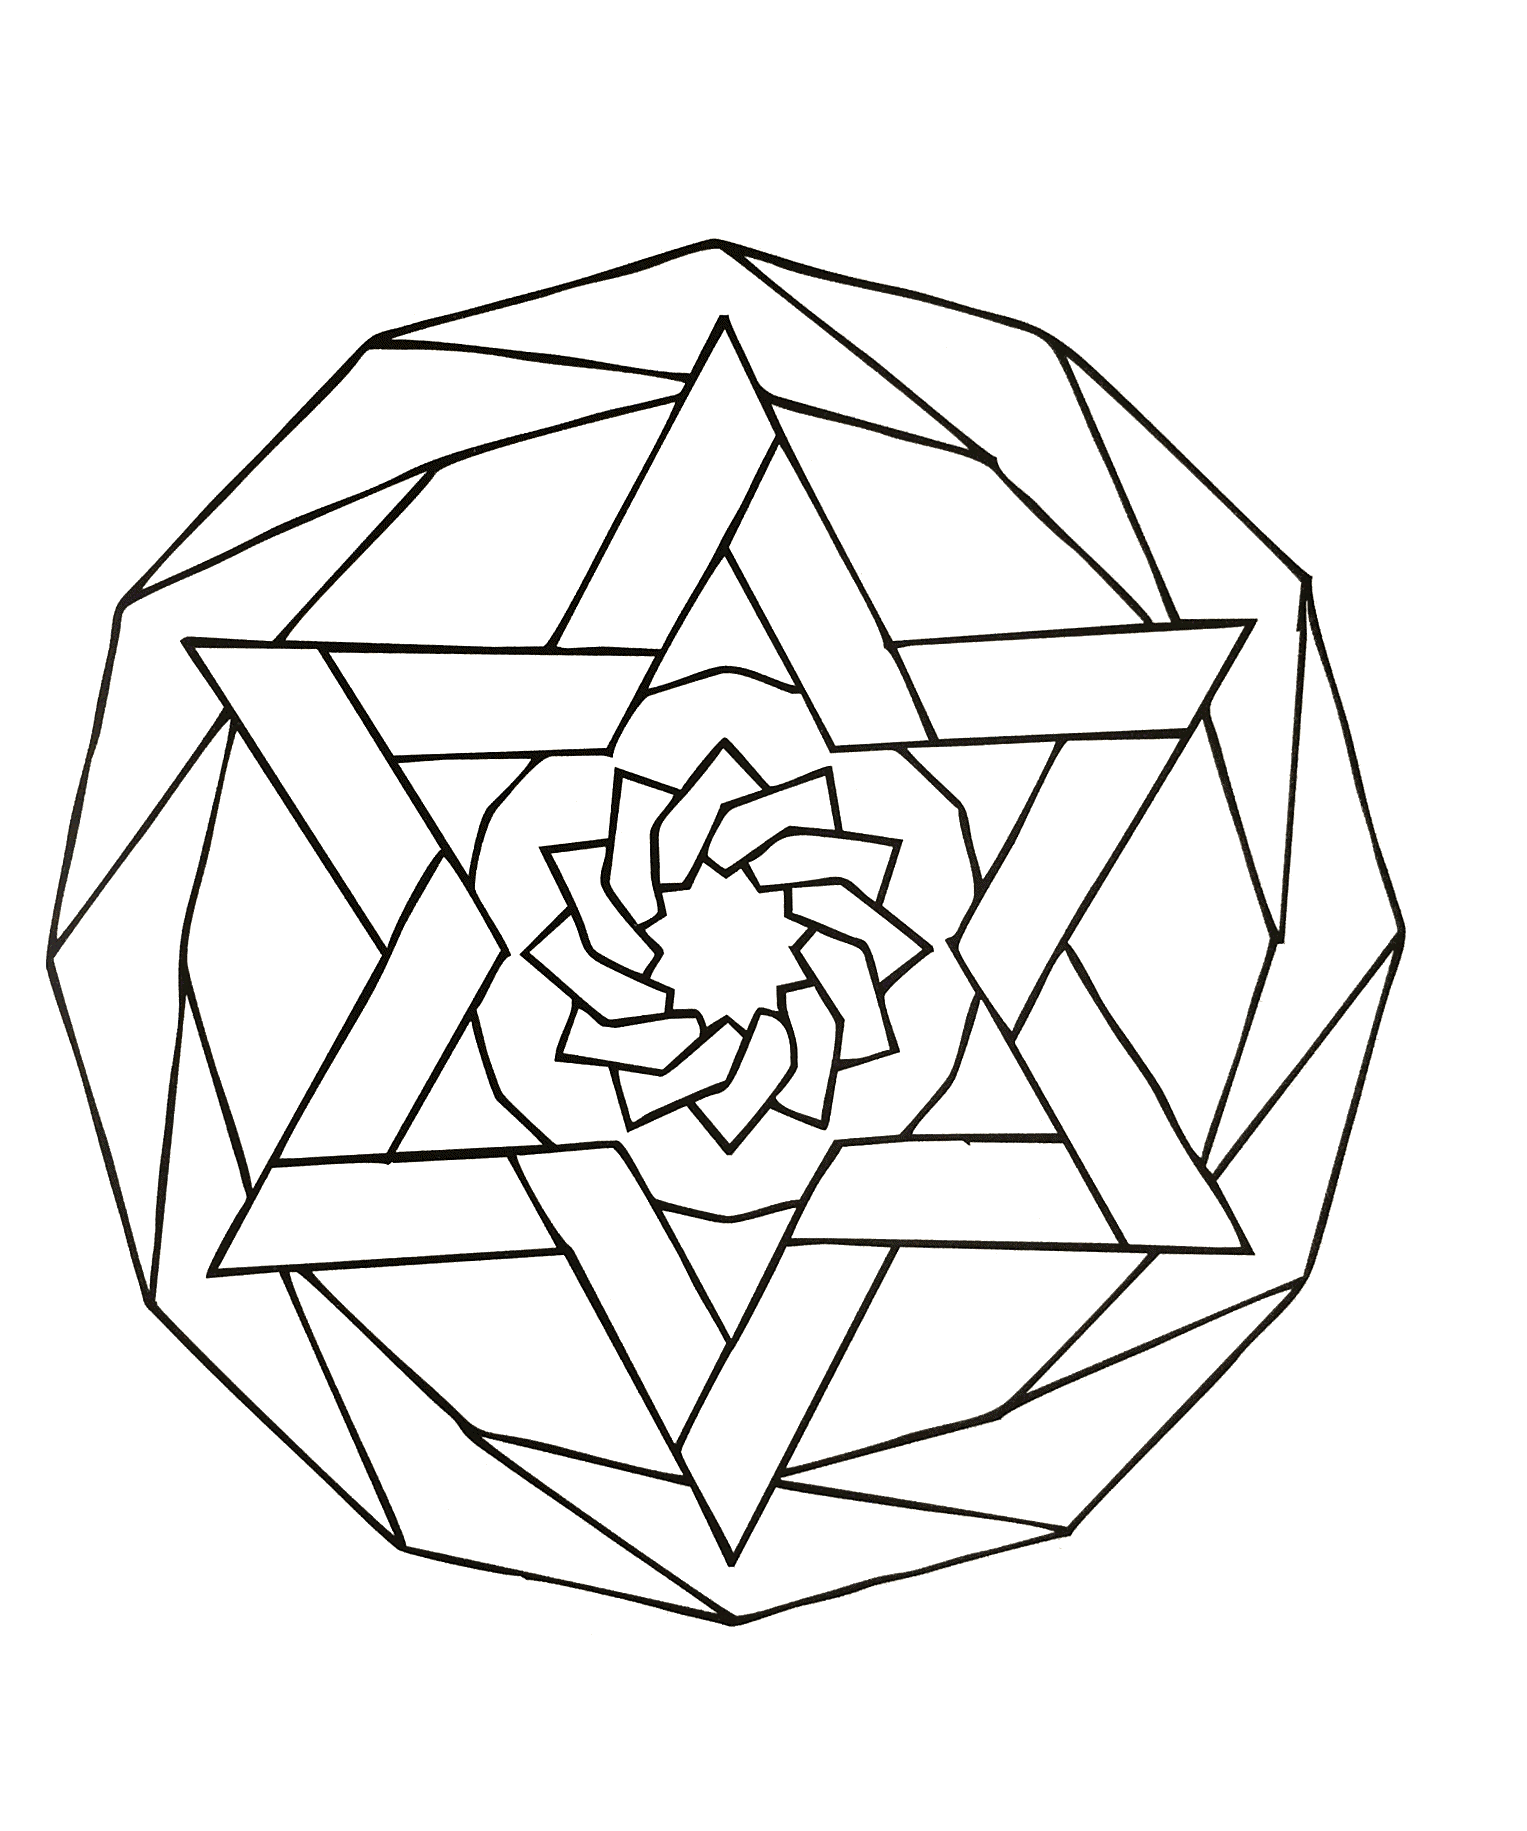 Mandala à colorier avec une étoile prenant l'ensemble du dessin ainsi qu'une magnifique fleur au centre de ce mandala.